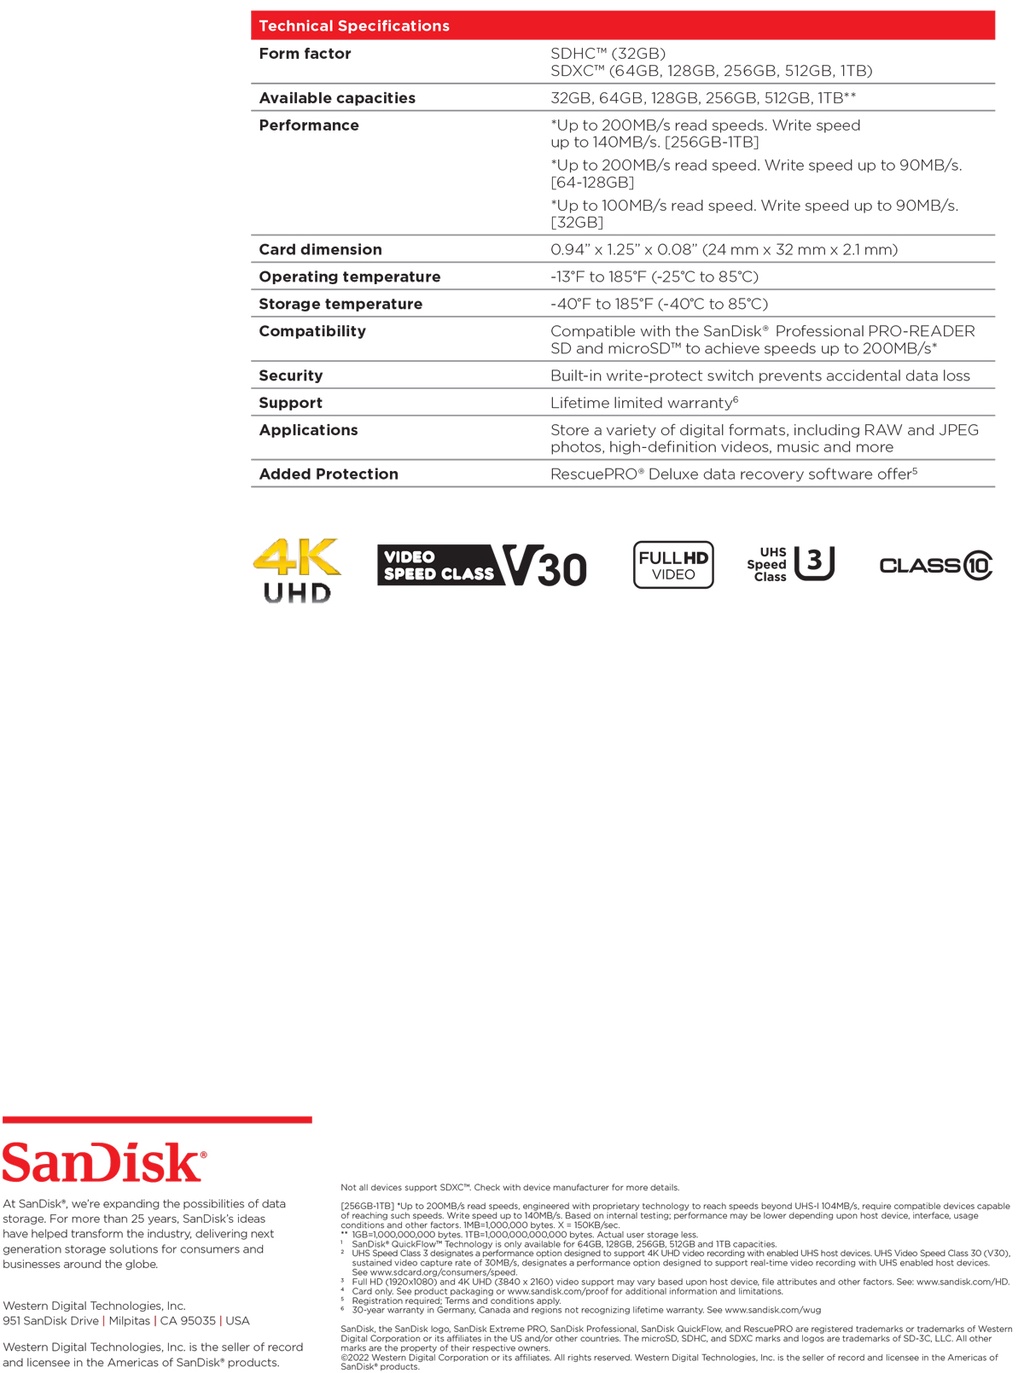 รูปภาพของ SanDisk Extreme Pro SD Card SDXC 512GB ( SDSDXXD-512G-GN4IN ) ความเร็วอ่าน 200MB/s เขียน 140MB/s เมมโมรี่การ์ด SDCARD แซนดิส รับประกัน Synnex lifetime